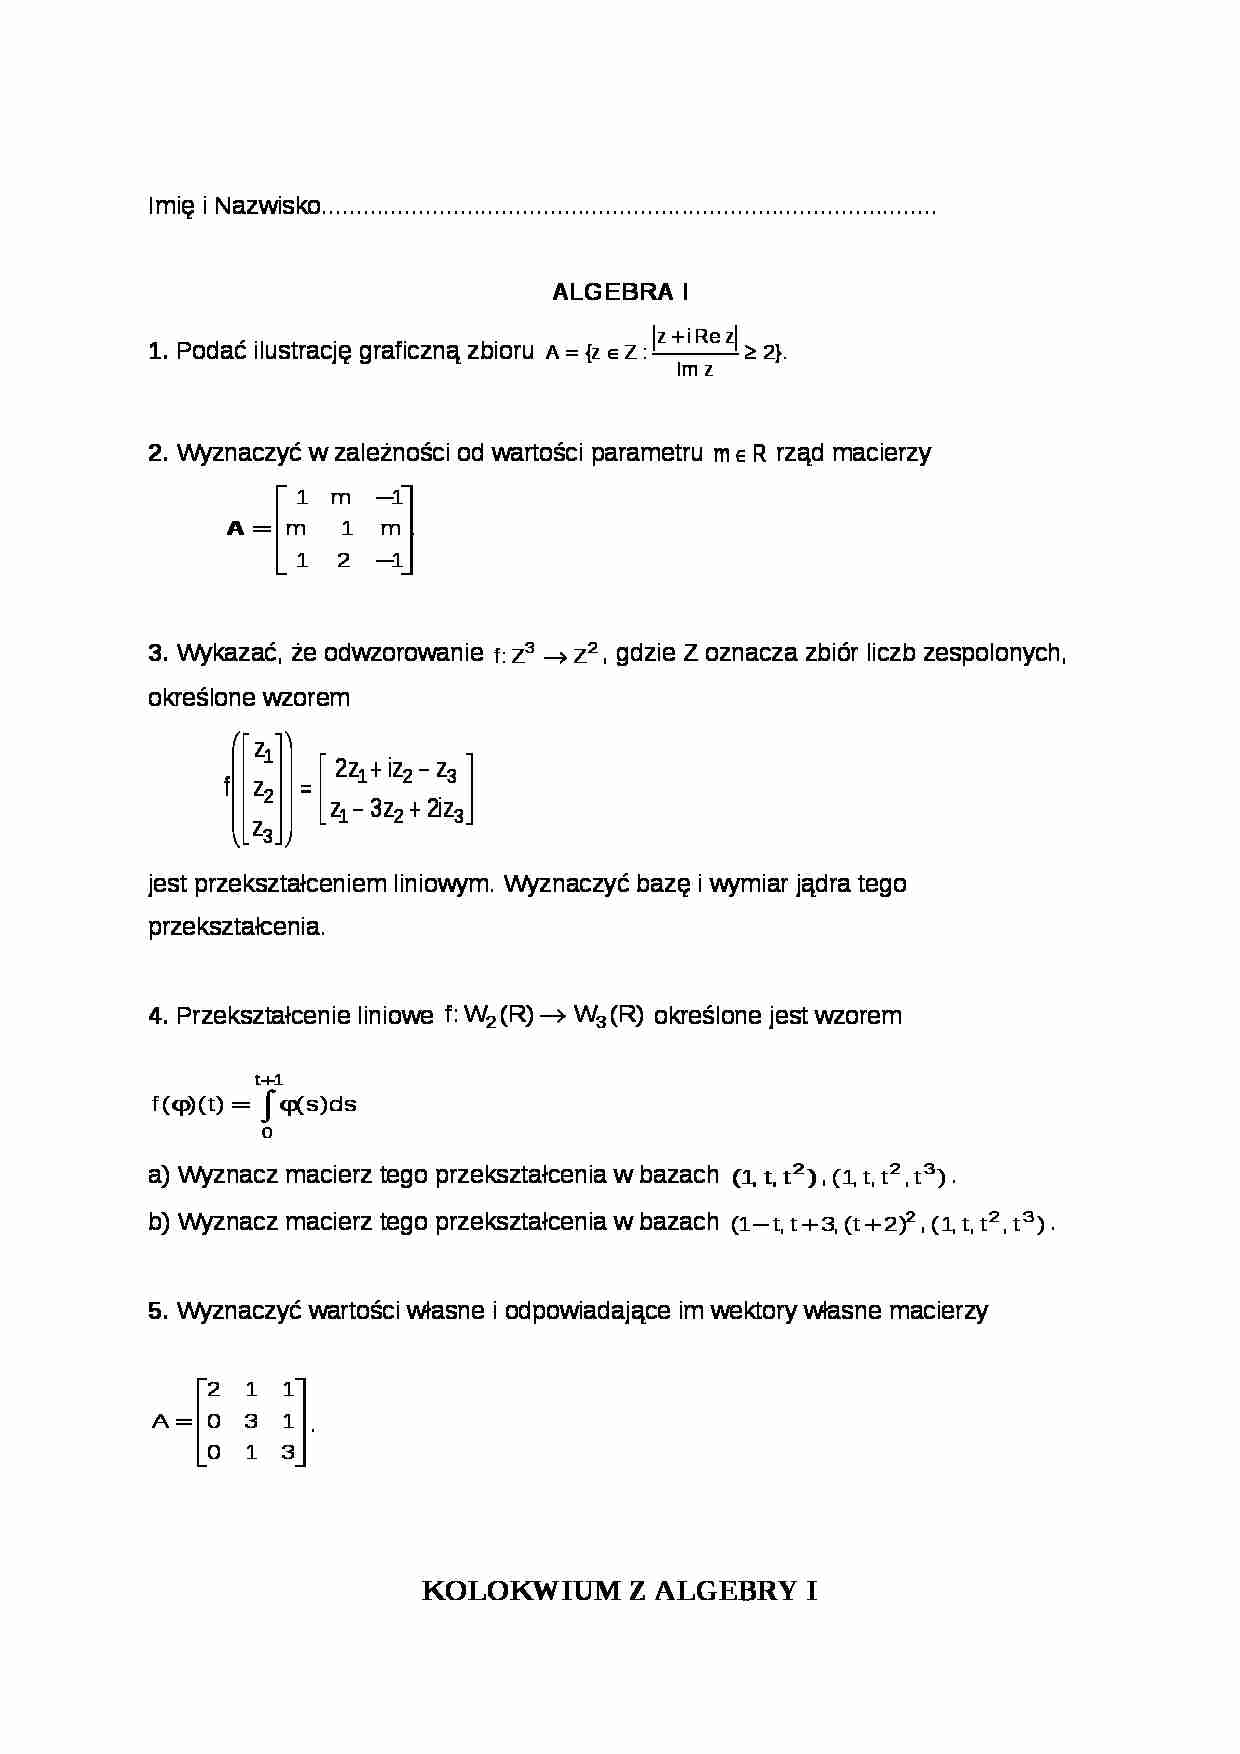 Algebra - test wiedzy - strona 1